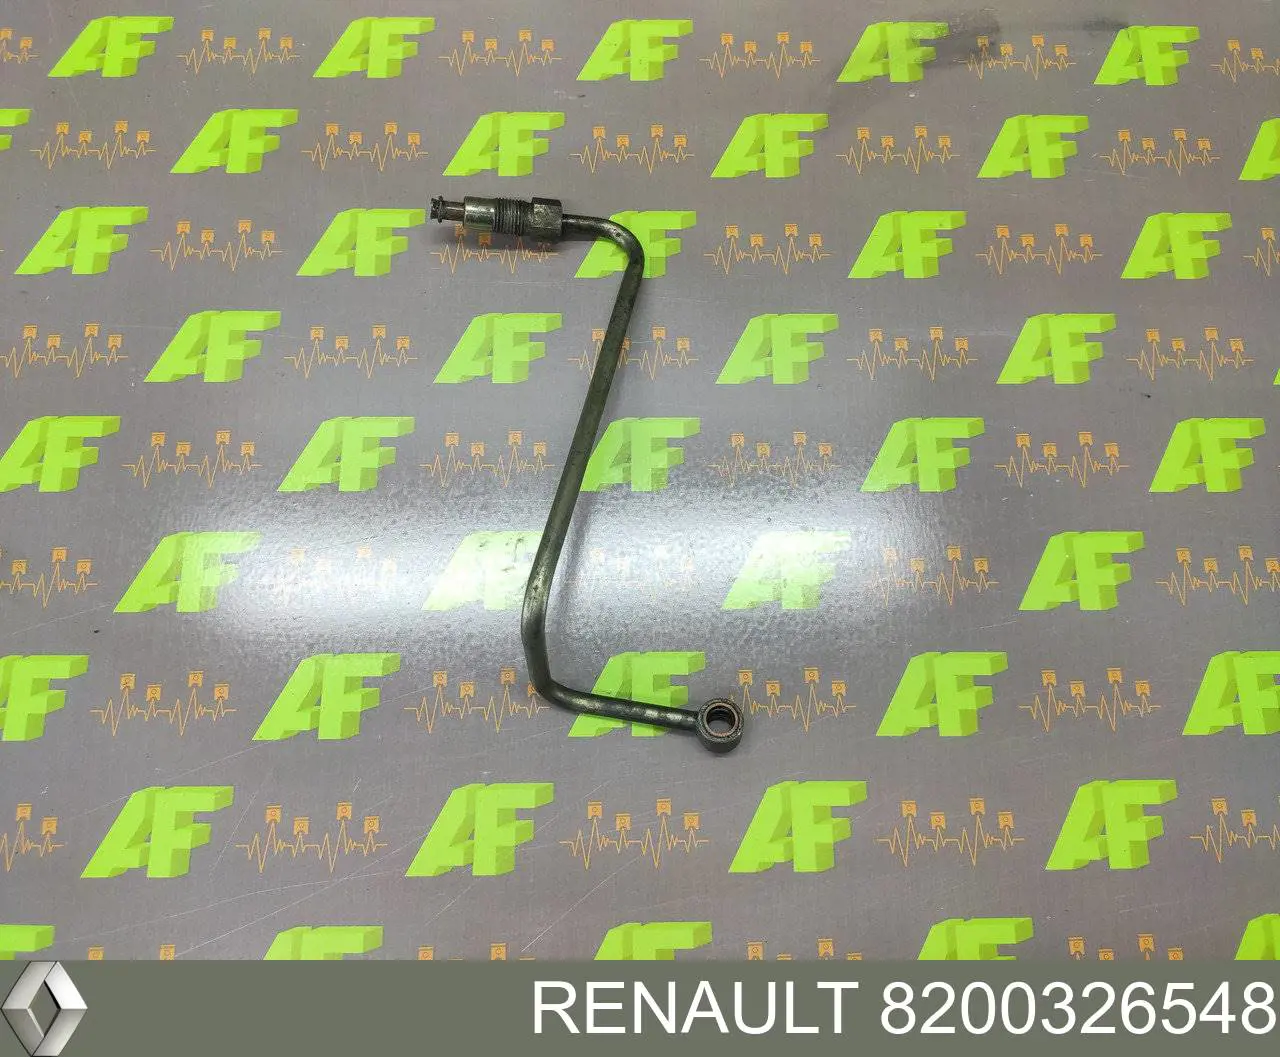 8200326548 Renault (RVI) tubo (mangueira de fornecimento de óleo de turbina)